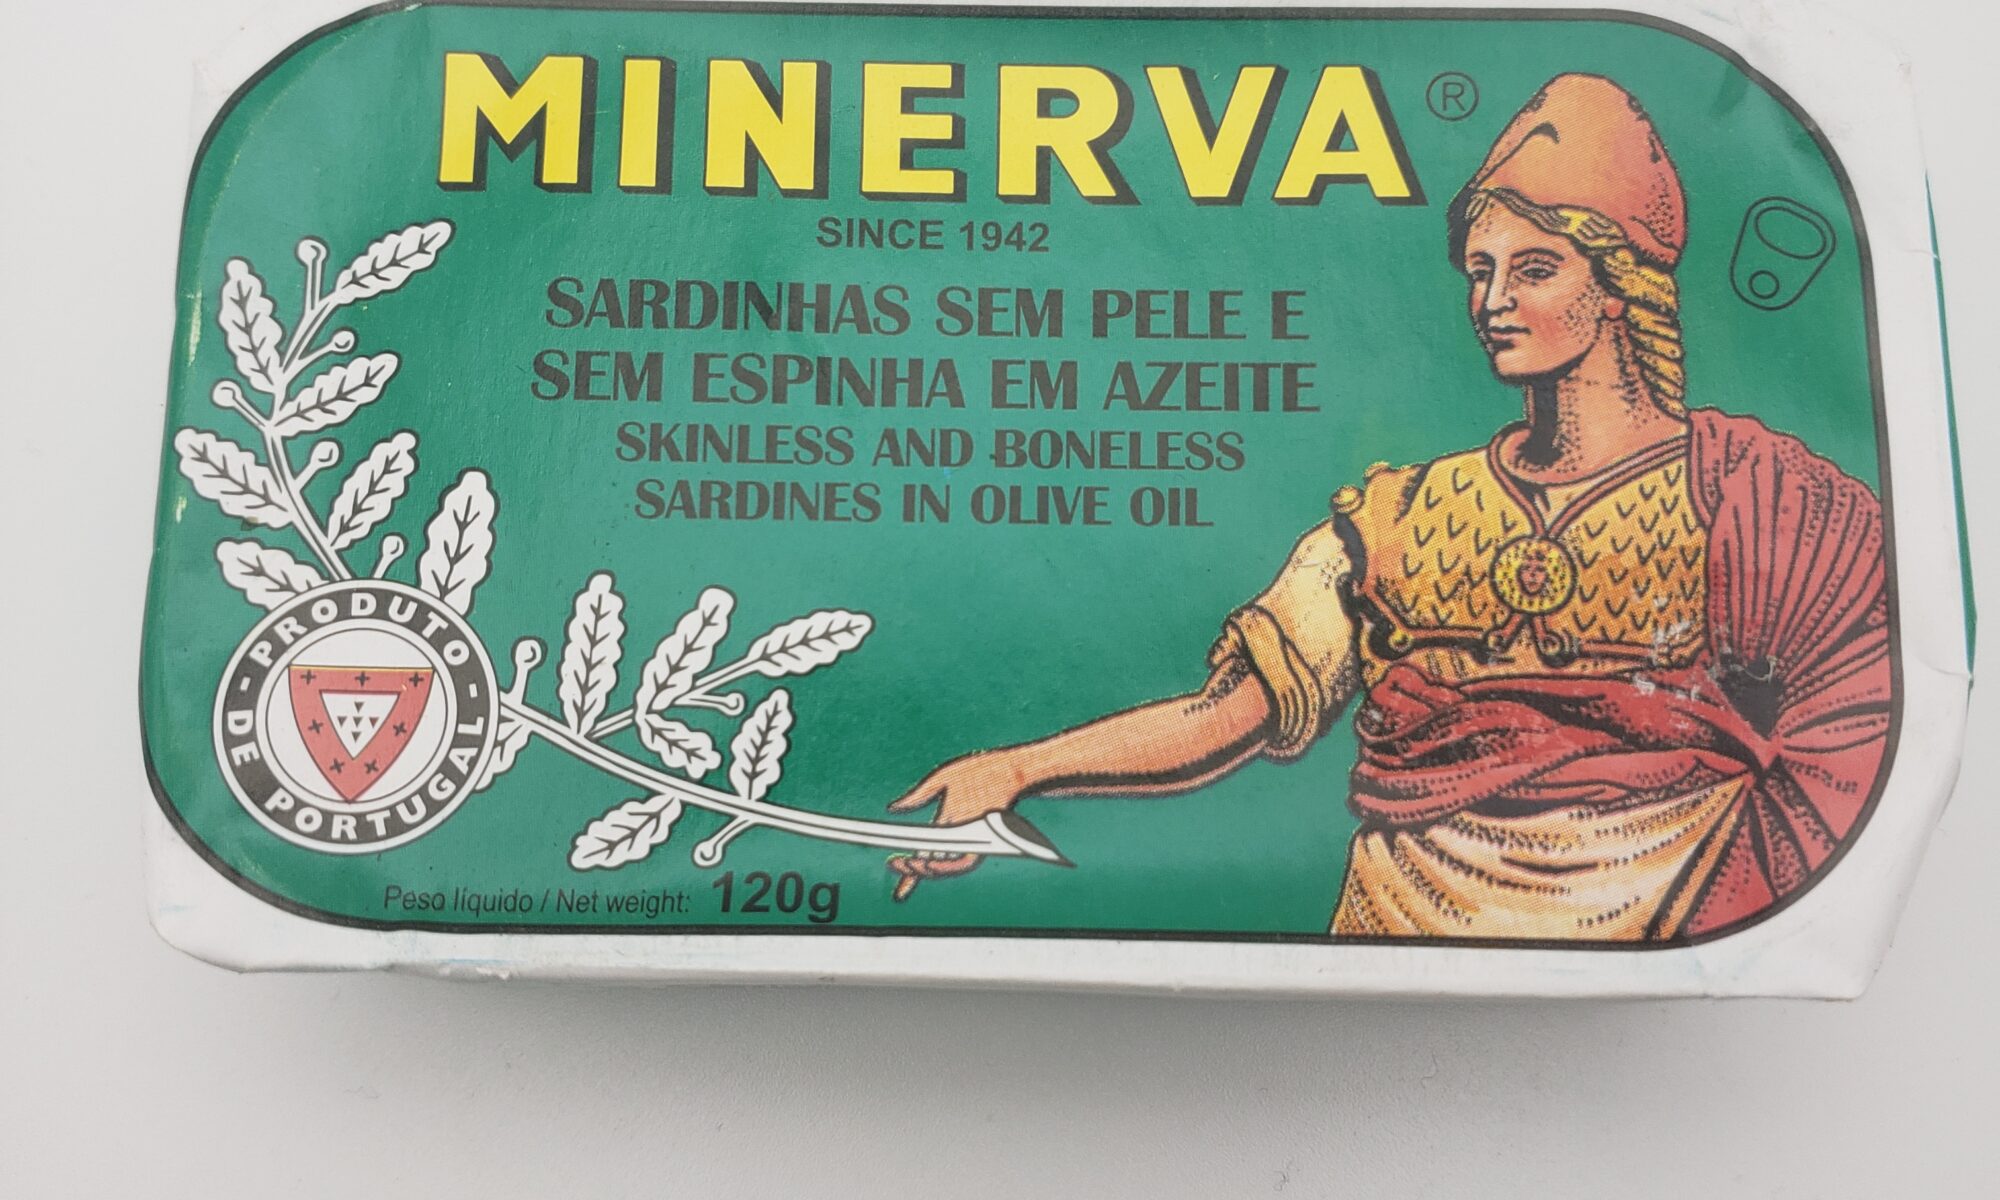 Image of Minerva skinless boneless sardines in olive oil